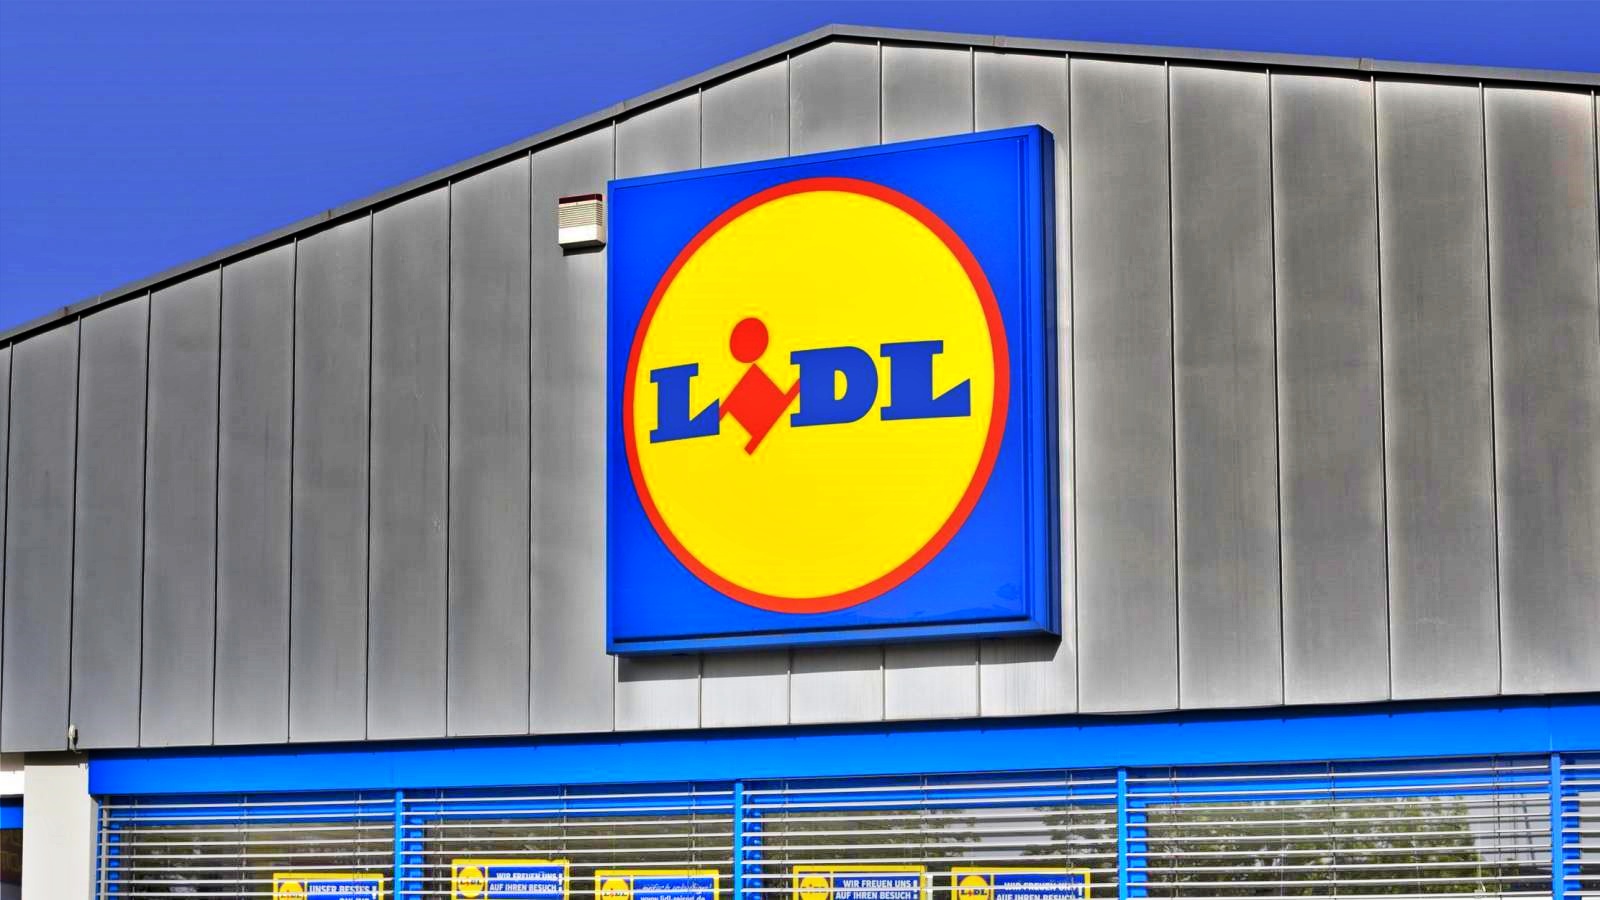 Överraska LIDL Rumänien nya kunder gratispriser erbjuds italienska veckan (5)